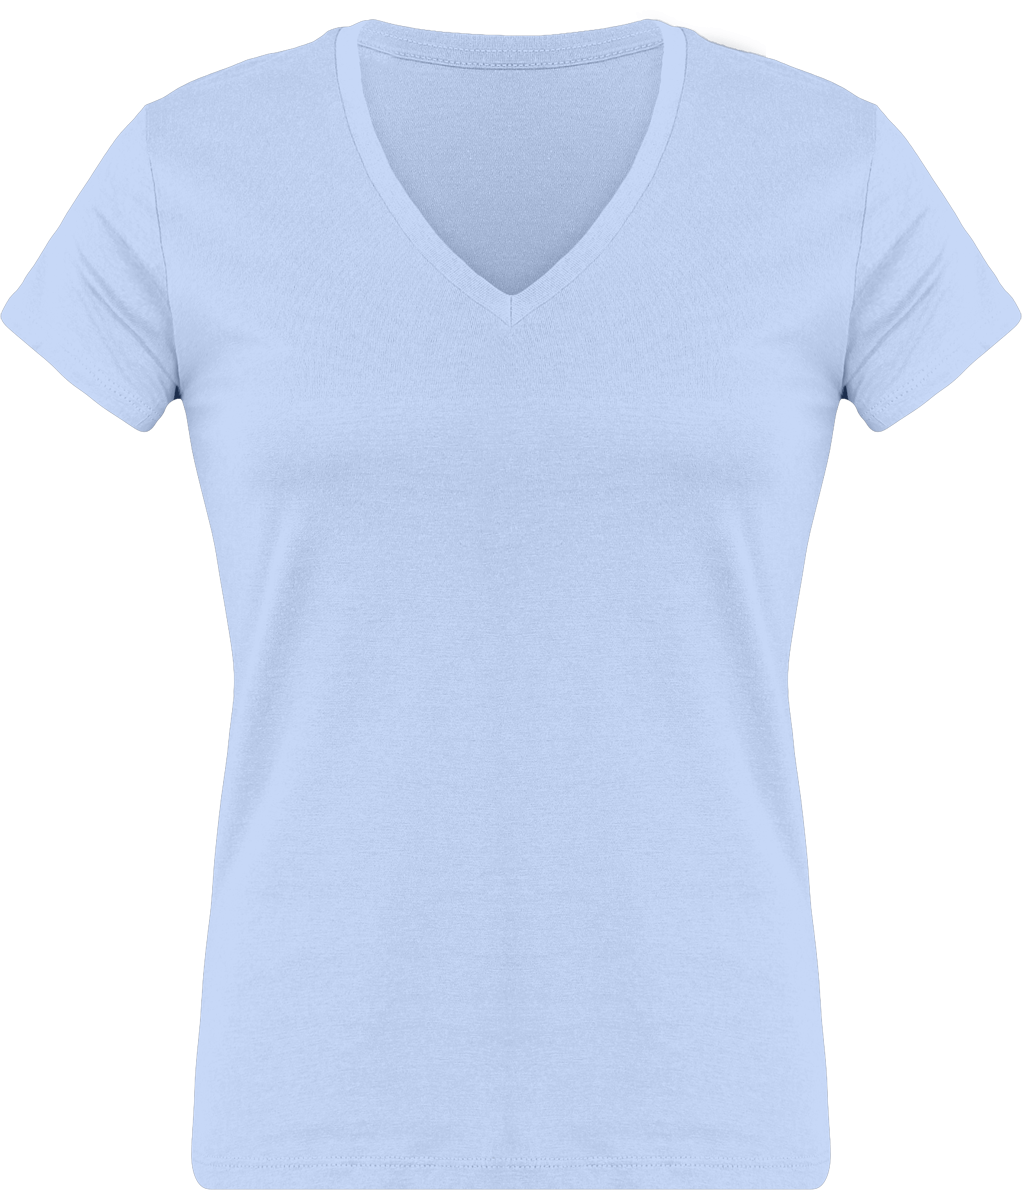 T-Shirt Femme Personnalisé, Féminin Et Confortable Avec Son Col En V Sky Blue